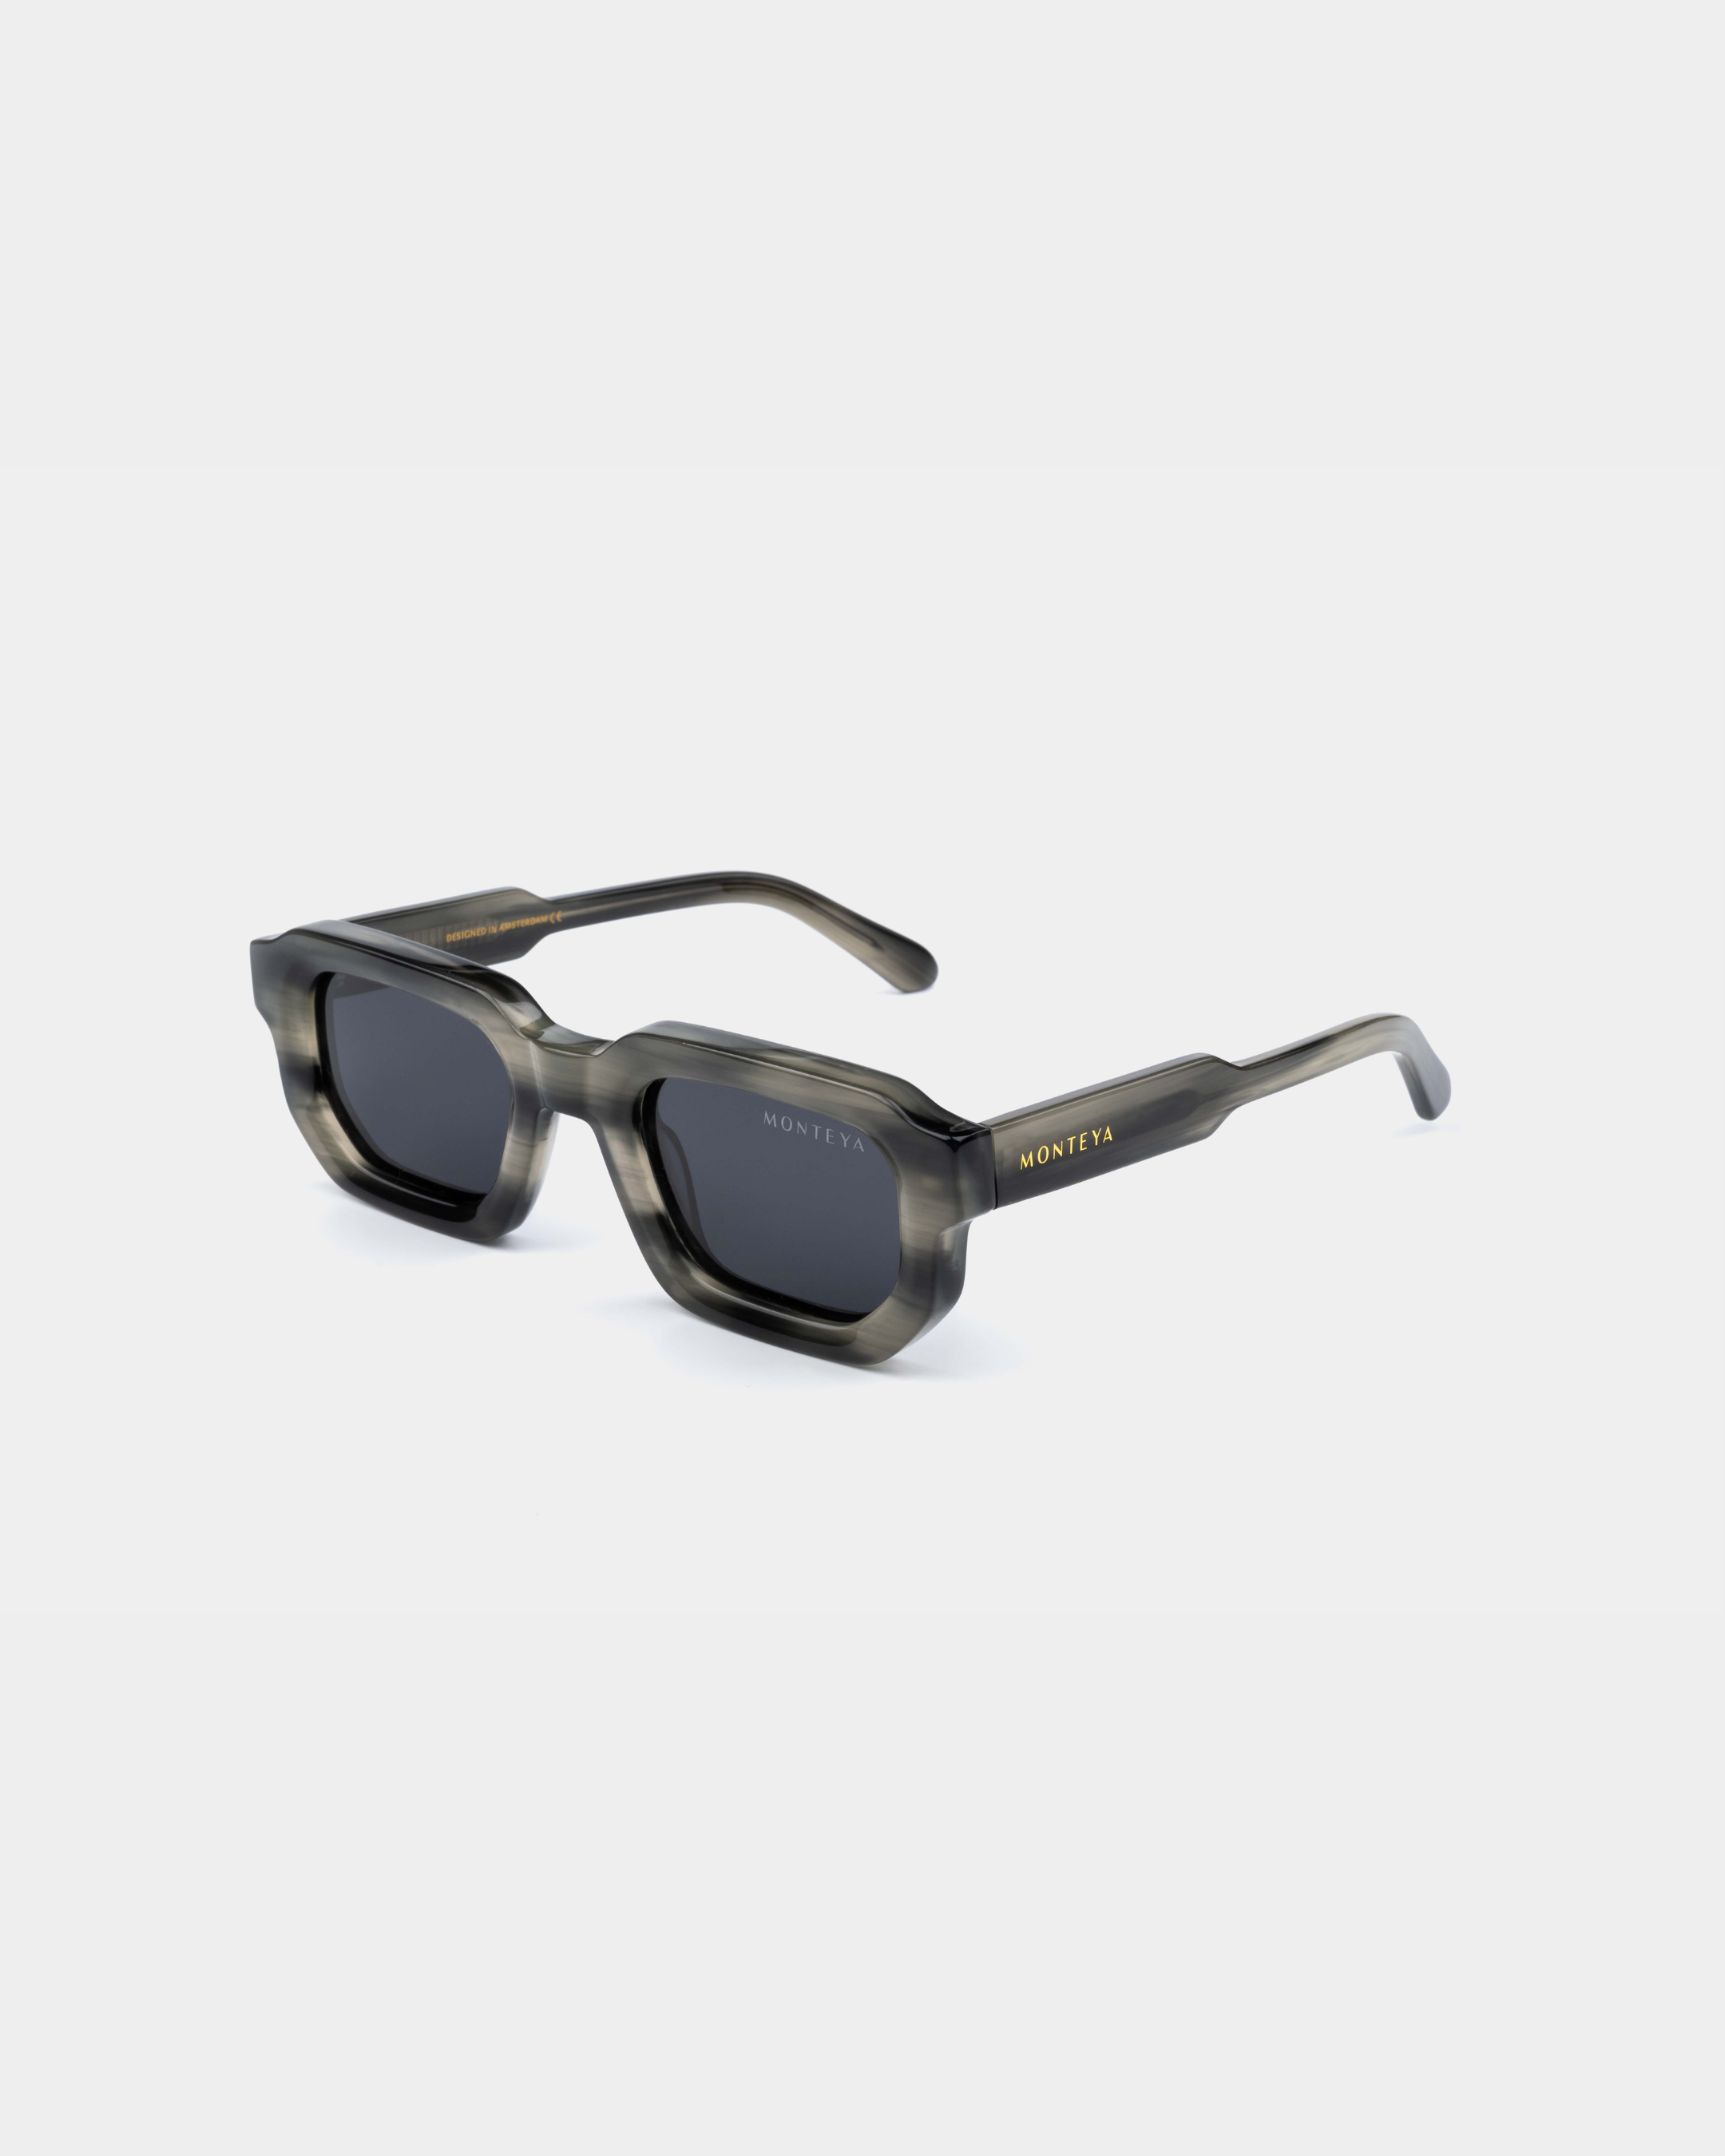 MONTEYA Urban - Charcoal - Acetate Frame - TAC Polarized Lenses - High End Eyewear - 05